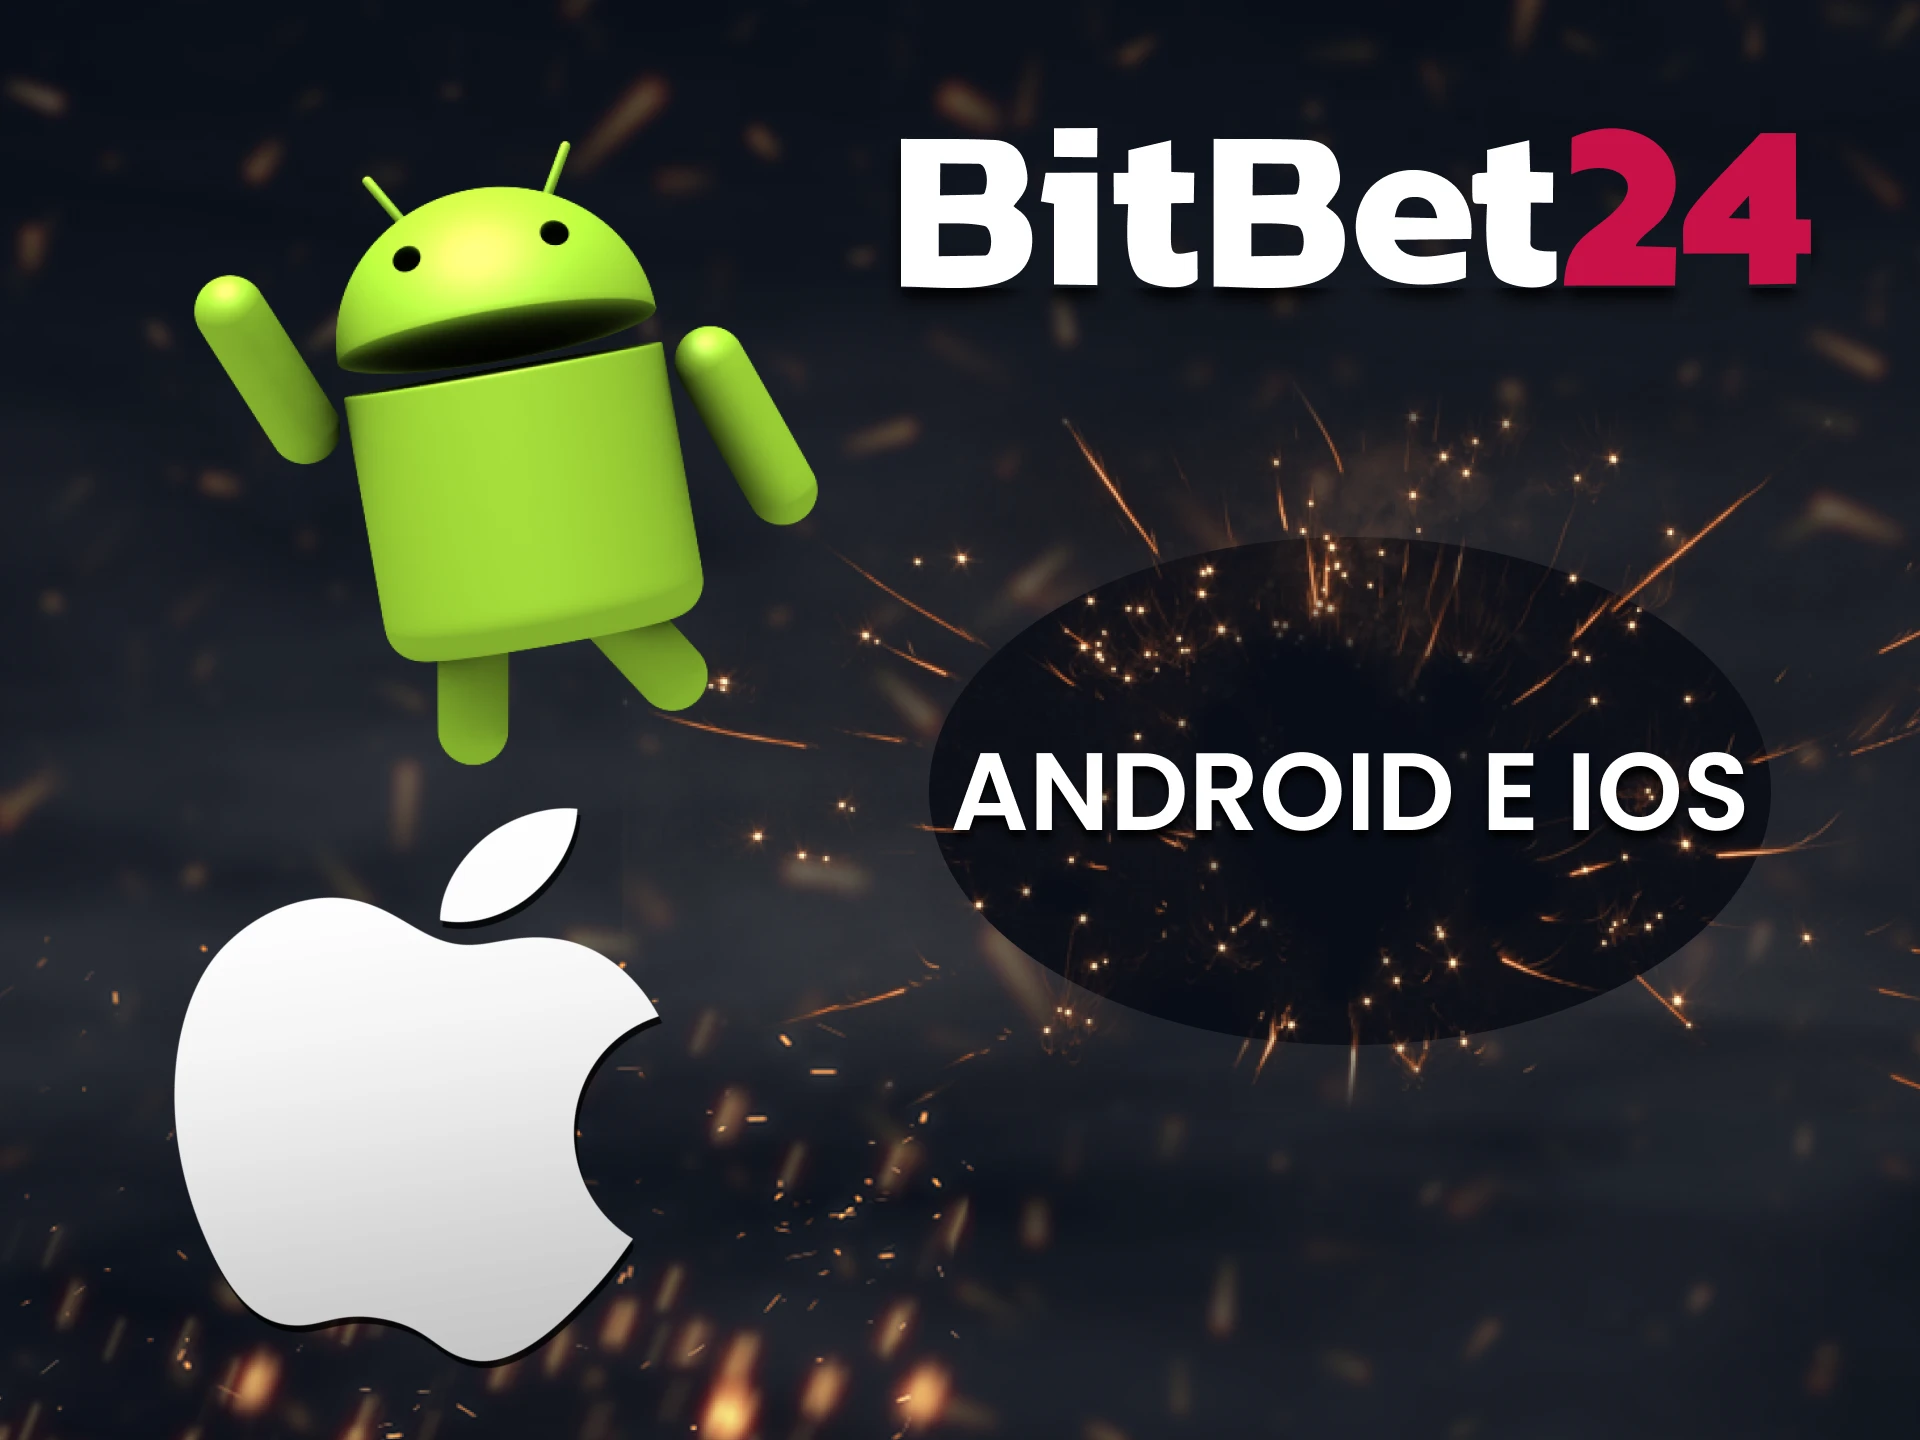 BitBet24 possui um aplicativo para Android e iOS.